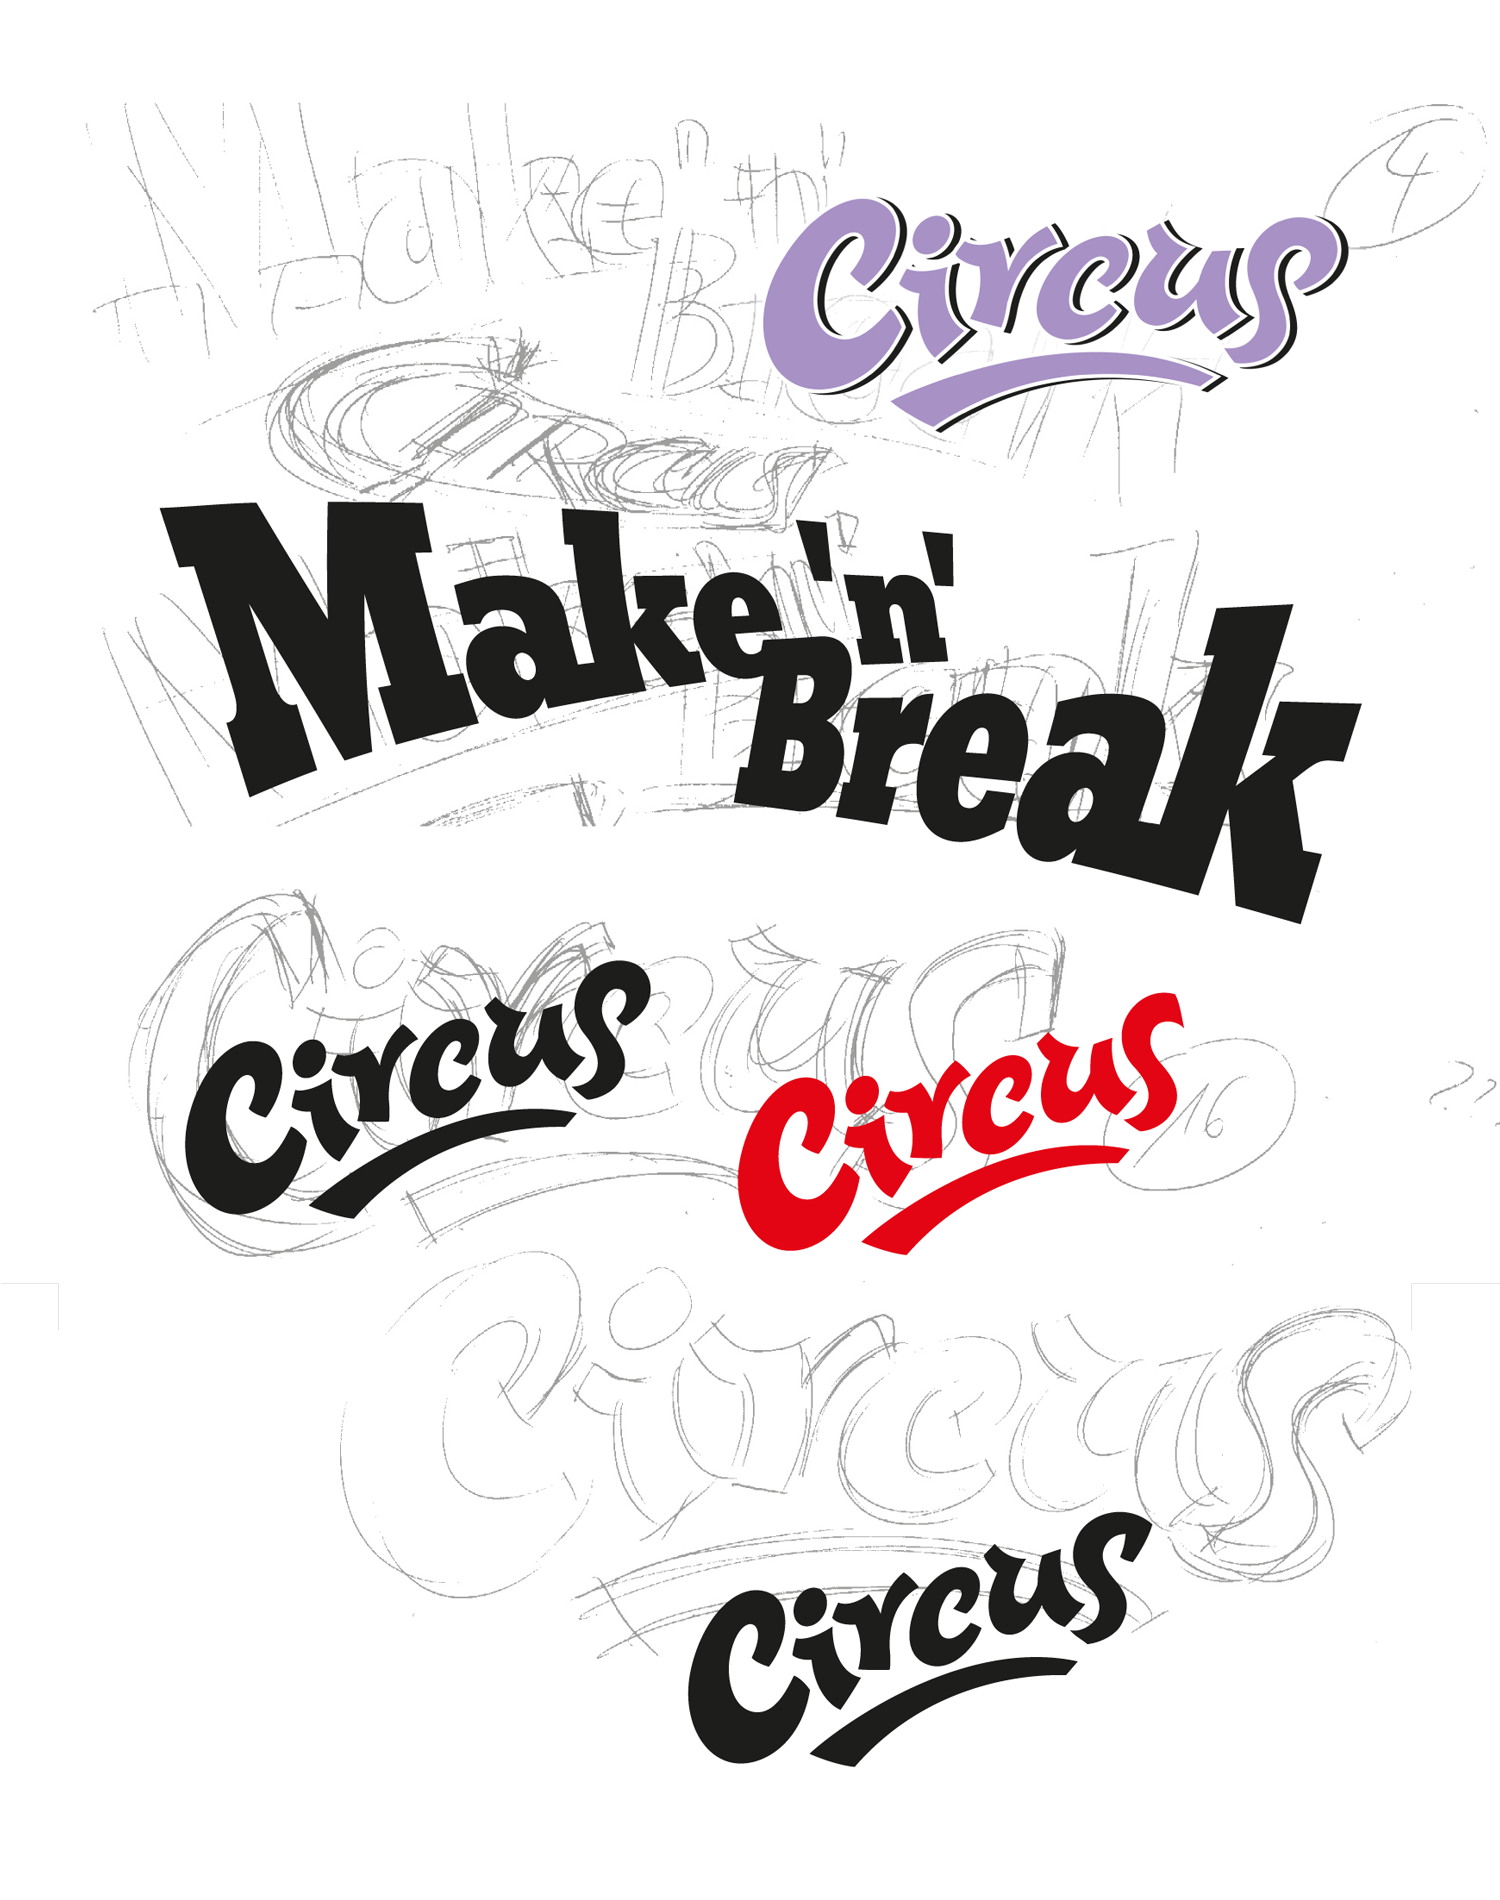 Circus logos